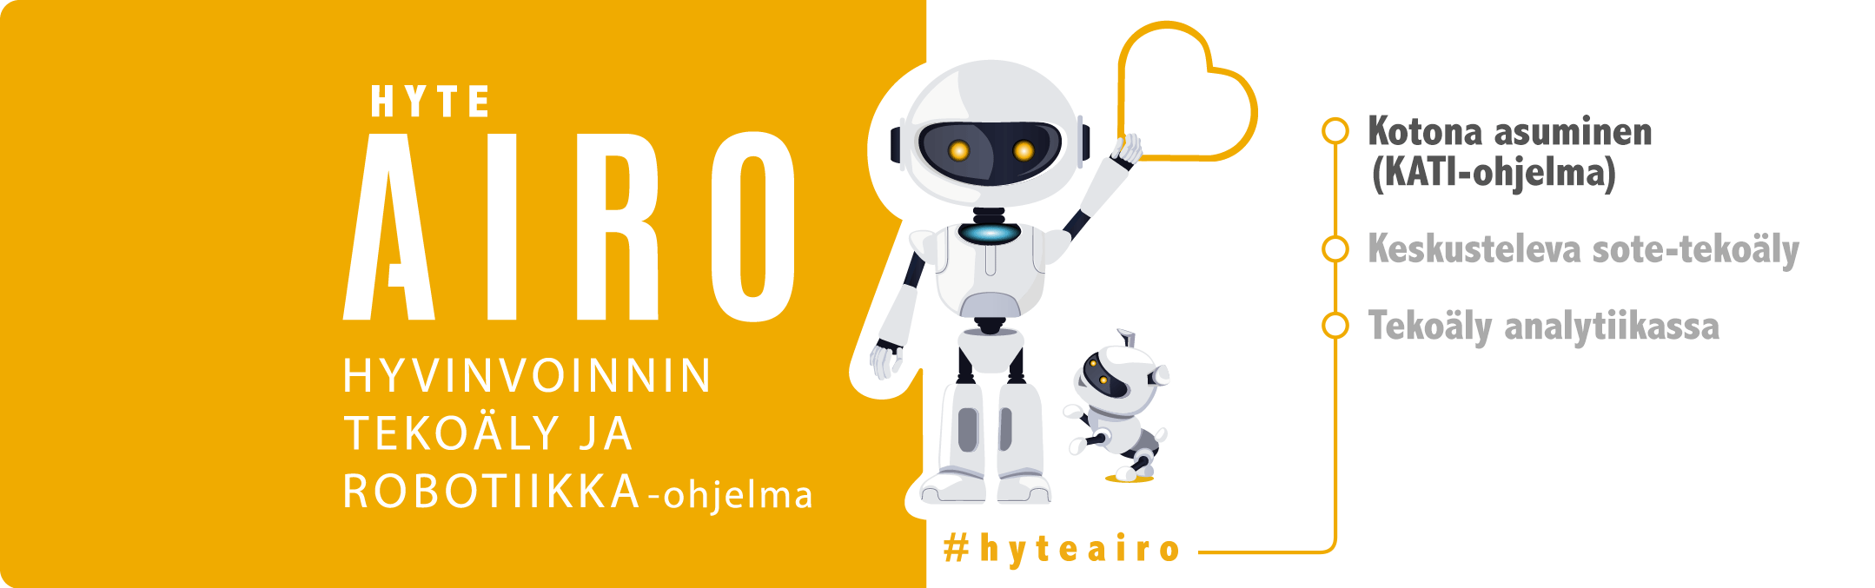 Hyteairon logo roboteilla, hyvinvoinnin ja tekoäly ja robotiikka-ohjelma. Kotona asuminen (KATI-ohjelma) (boldattuna), Keskusteleva sote-tekoäly ja Tekoäly analytiikassa.